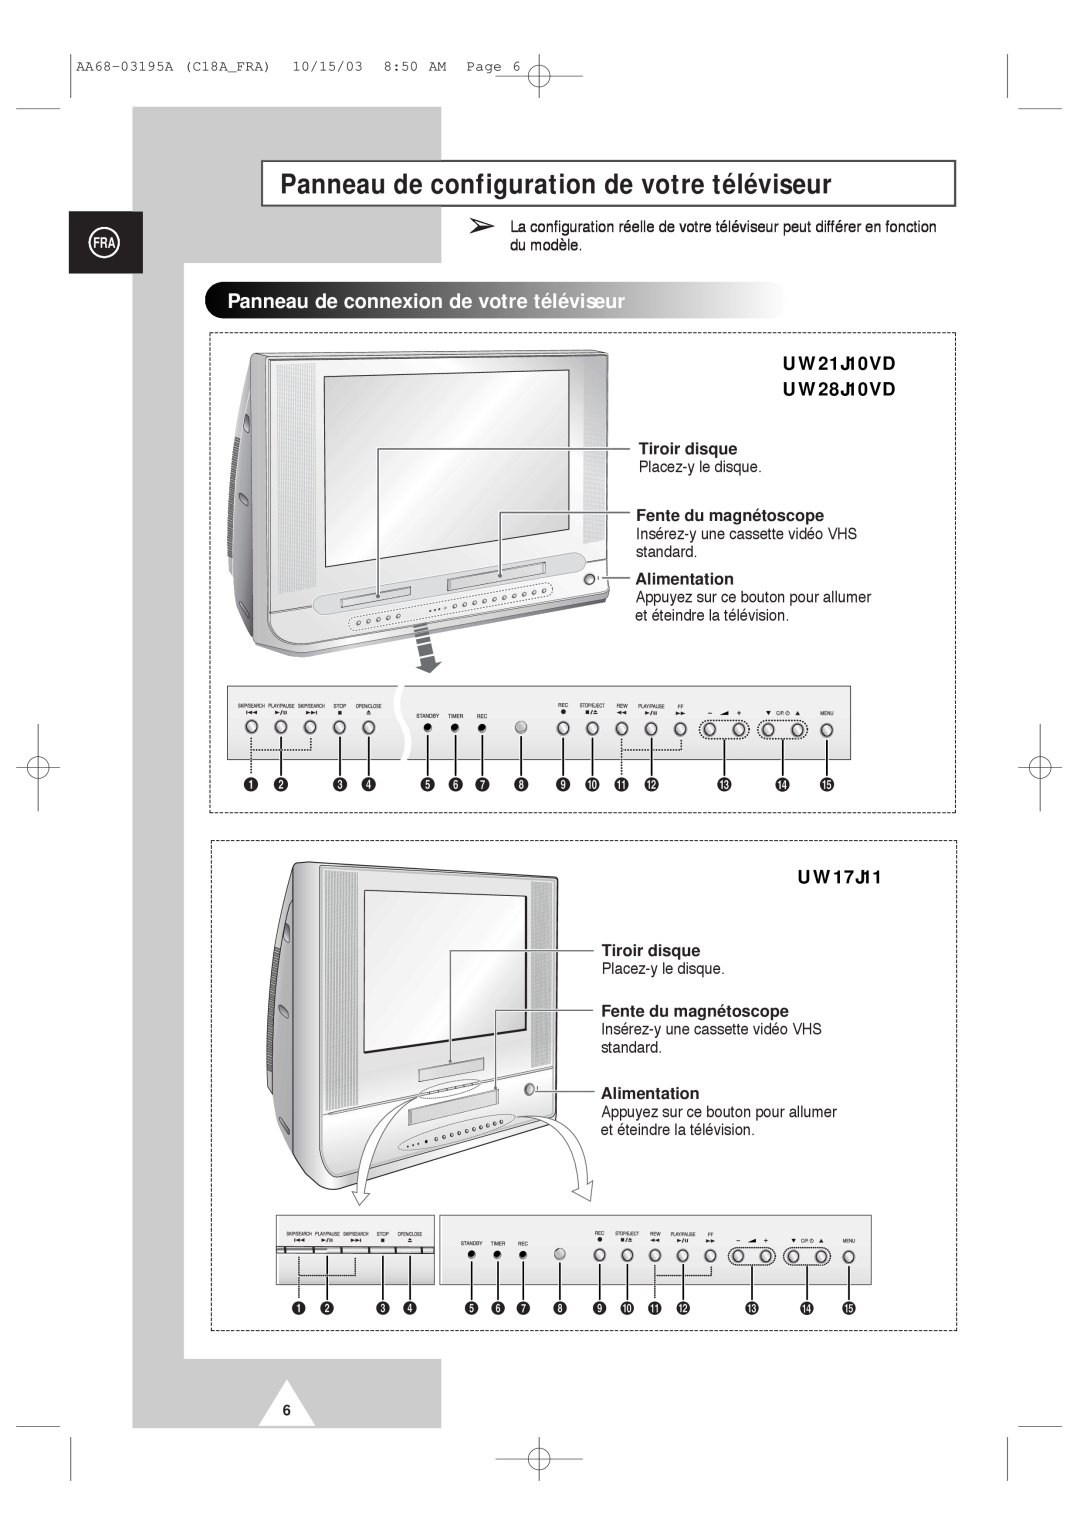 Samsung UW17J11VD5XXEC Panneau de configuration de votre téléviseur, Panneaudeconnexiondevotretéléviseur, Tiroir disque 